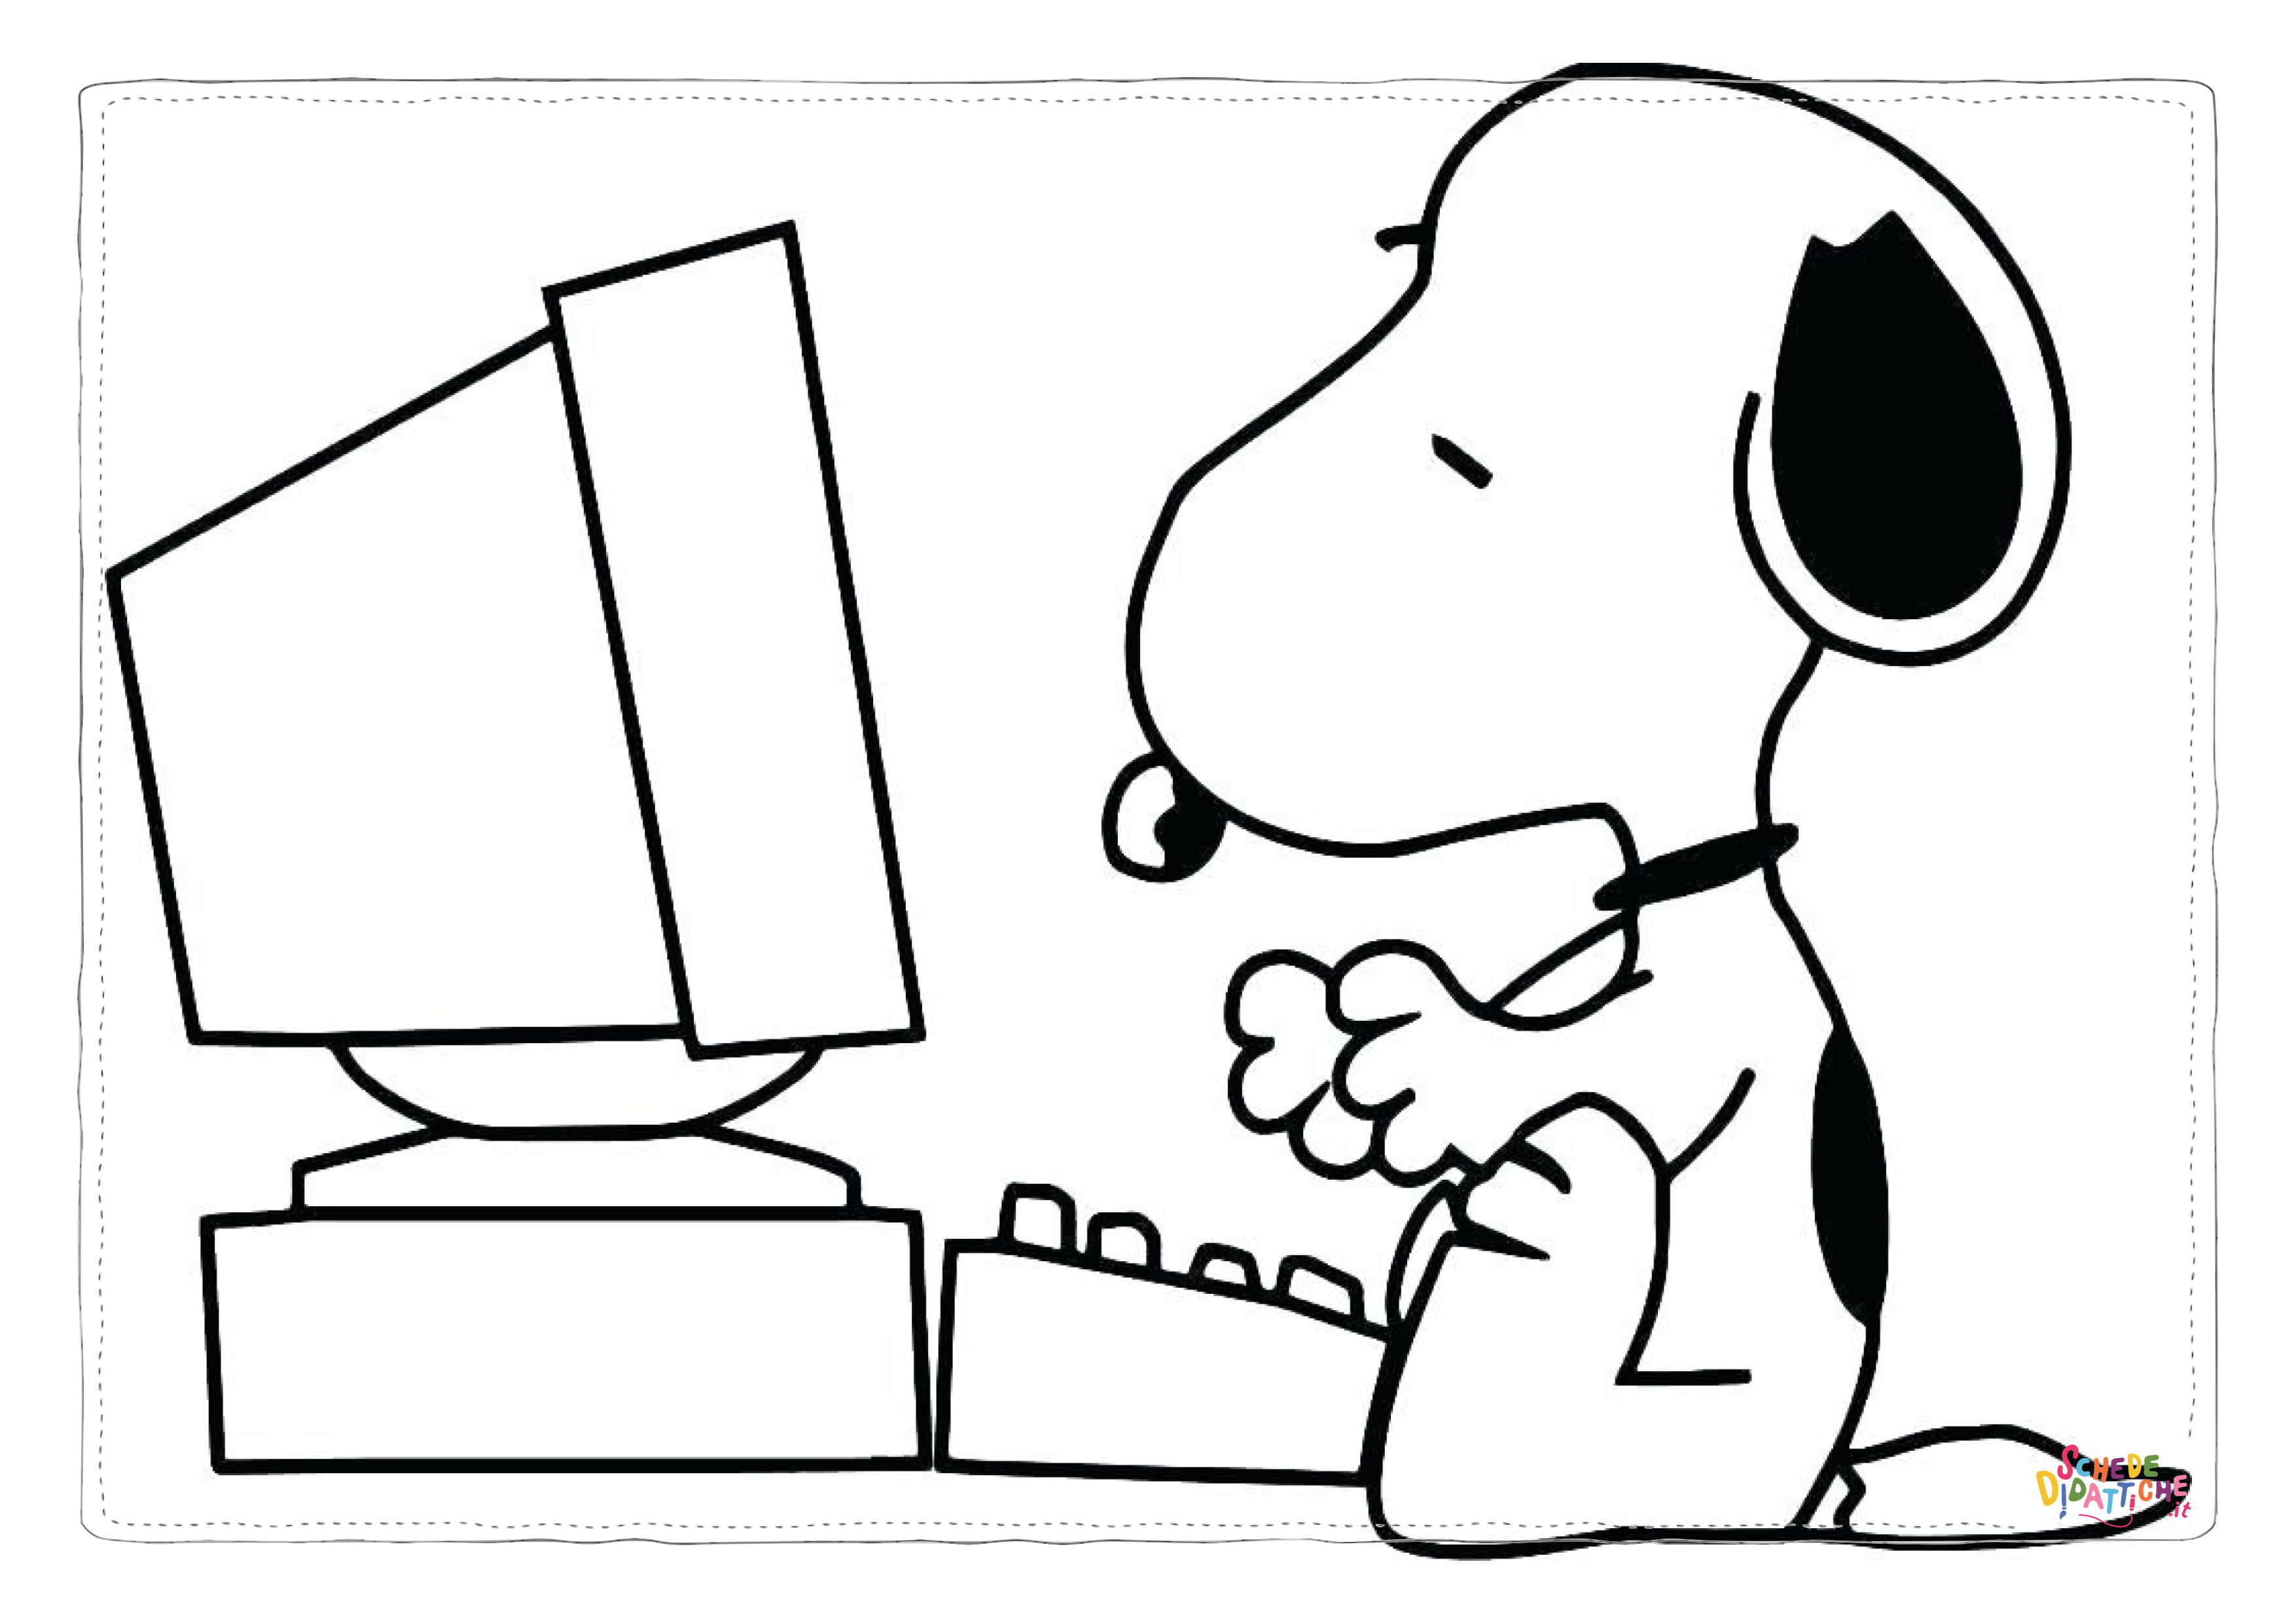 Disegno di Snoopy da stampare e colorare 33